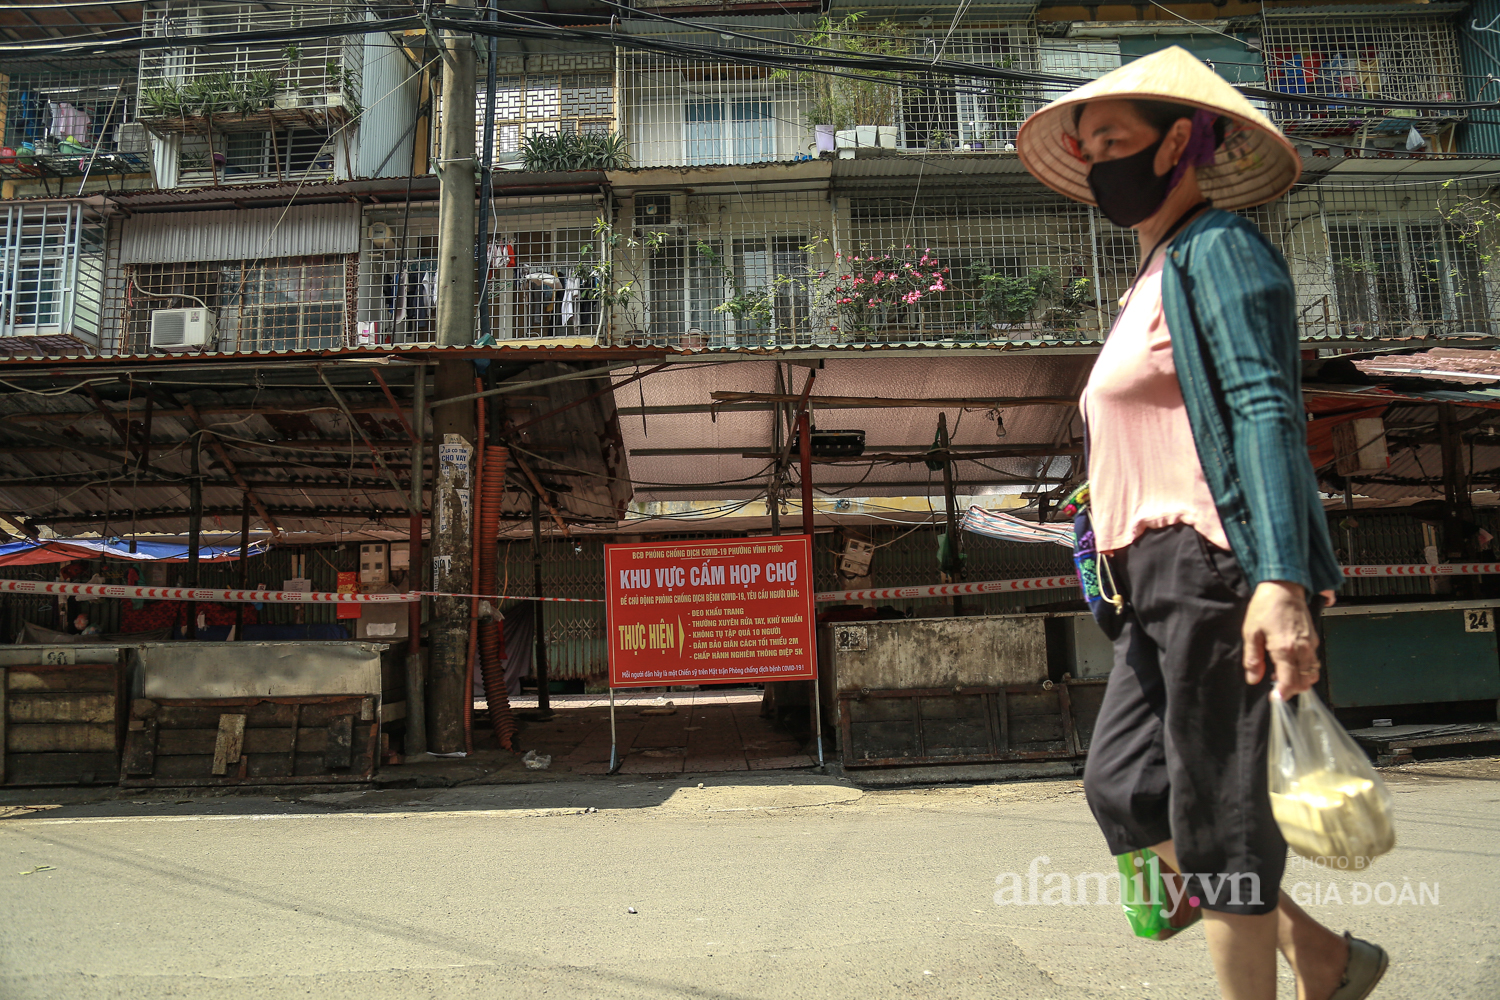 Chung tay phòng chống dịch COVID-19, một khu chợ ở Hà Nội người dân bỏ tiền vào xô rồi lấy đồ ở chậu - Ảnh 5.